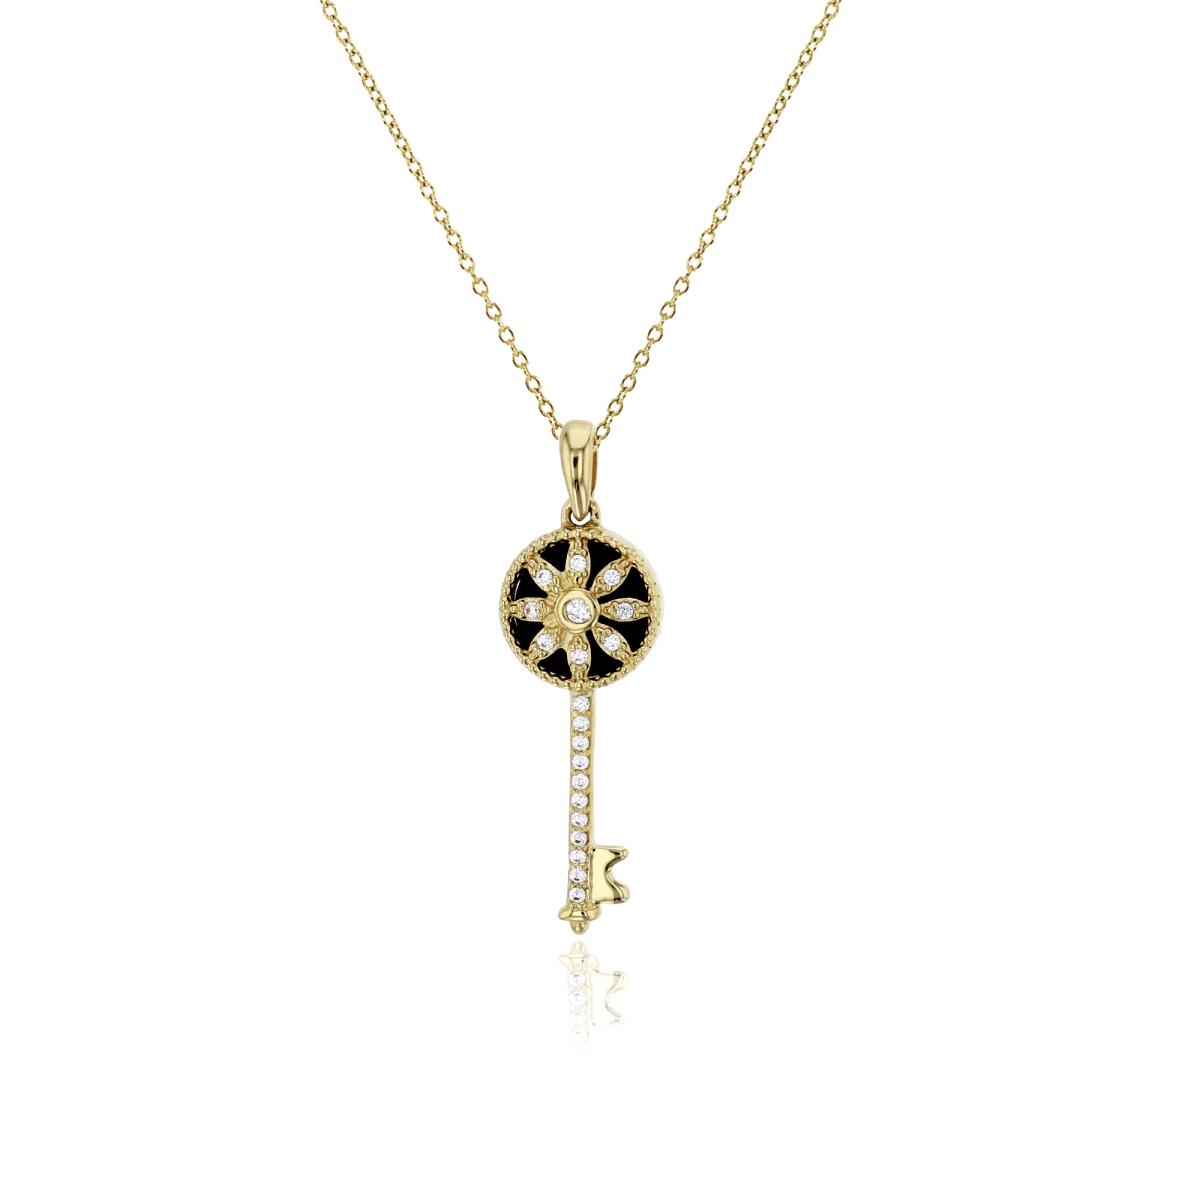 10K Yellow Gold Black Onyx & Clear CZ Flower Key 18" Necklace